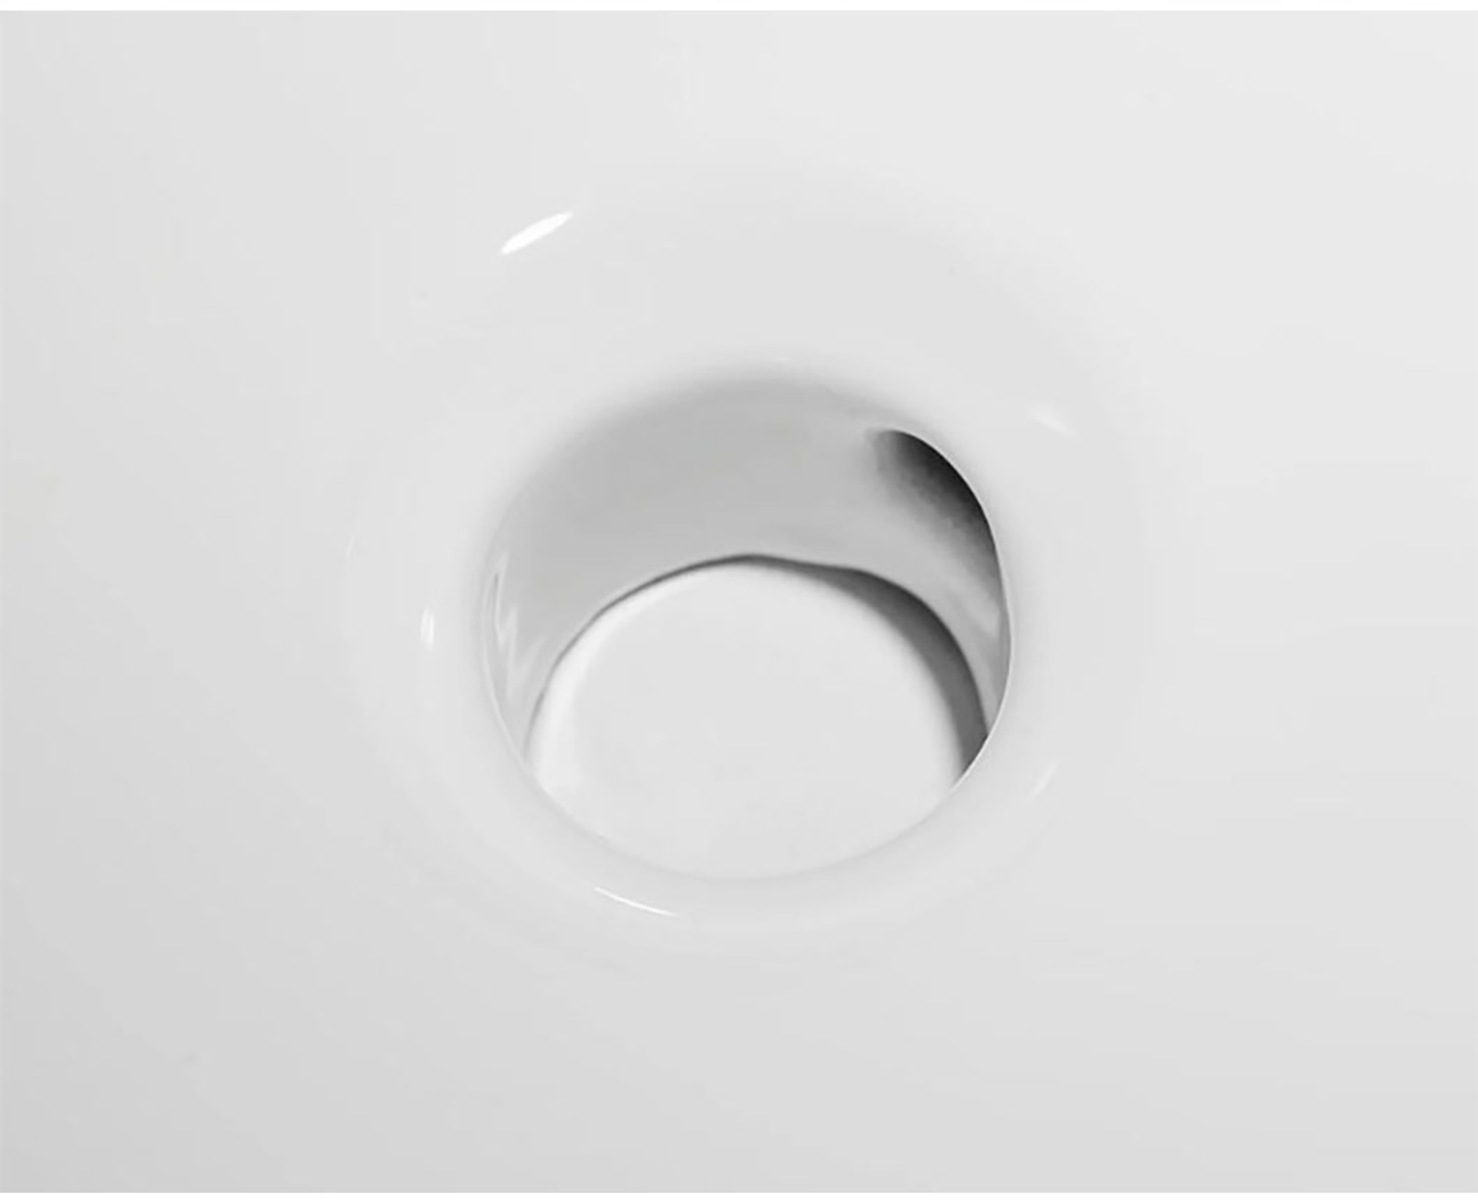 Lavamanos fregadero de piedra cerámica superficies sólidas mueble lavabo encimera baños lavabo lavabo moderno (7)